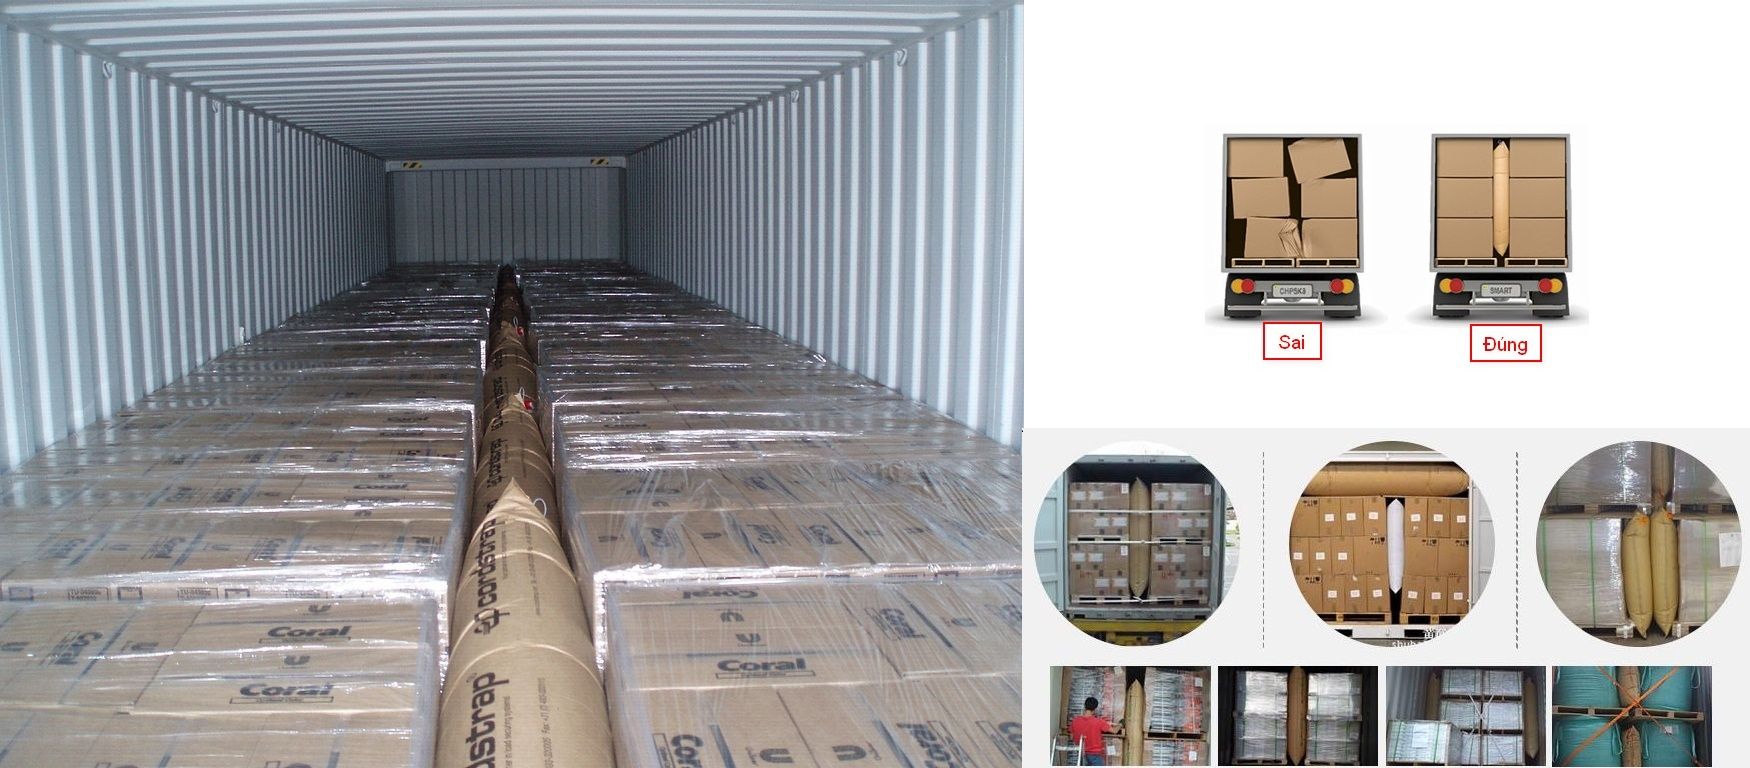 Những nguyên tắc cơ bản khi sắp xếp hàng hóa trong container thường bị bỏ qua